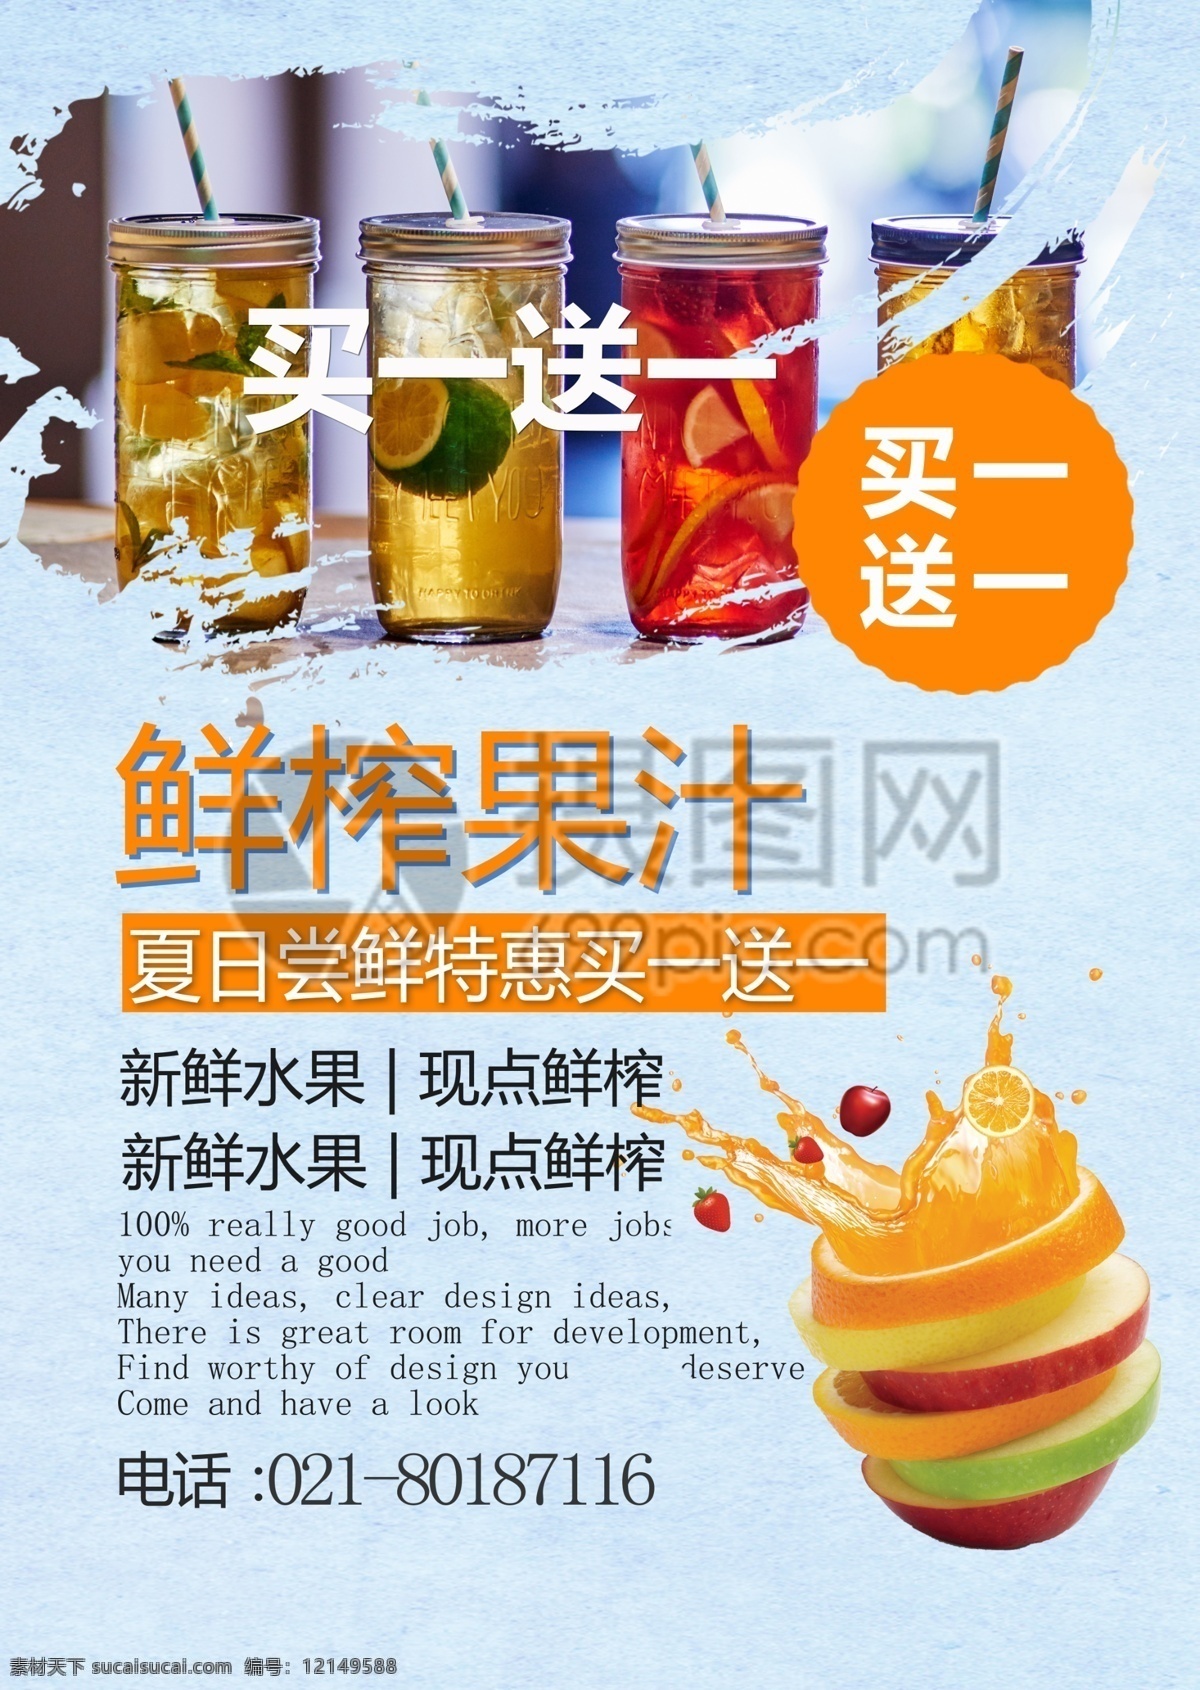 夏季 饮品 鲜榨 果汁 宣传单 饮料 饮品宣传 宣传单设计 夏天 简约 简洁 大气 水果 新鲜 鲜榨果汁